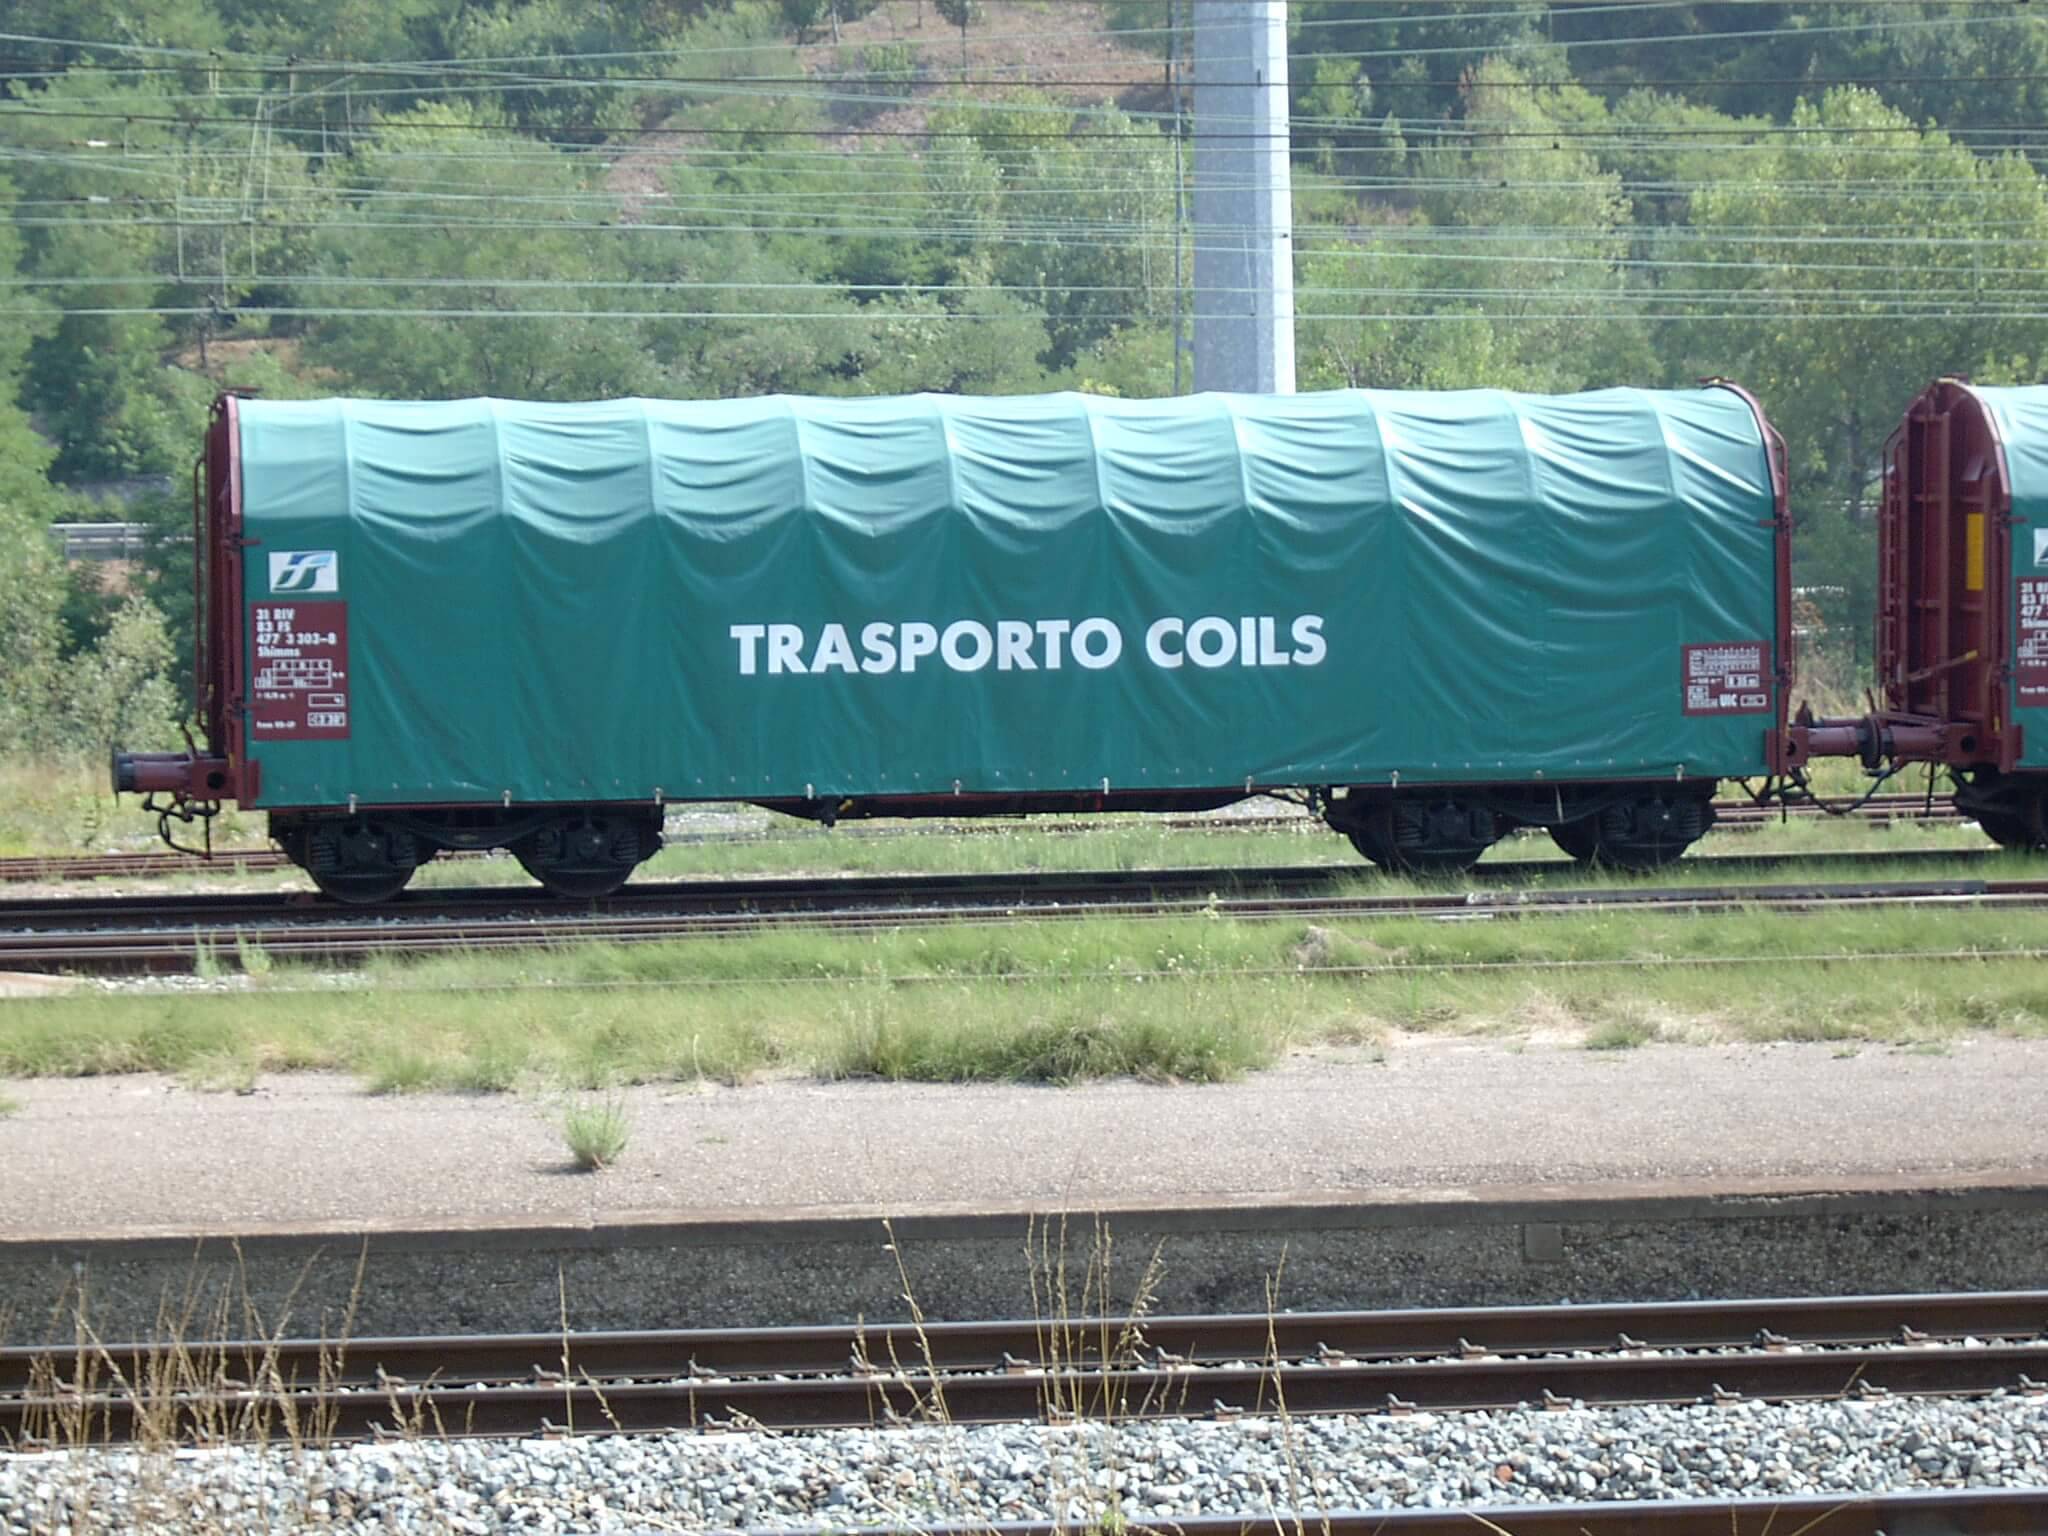 Trasporti / Transports